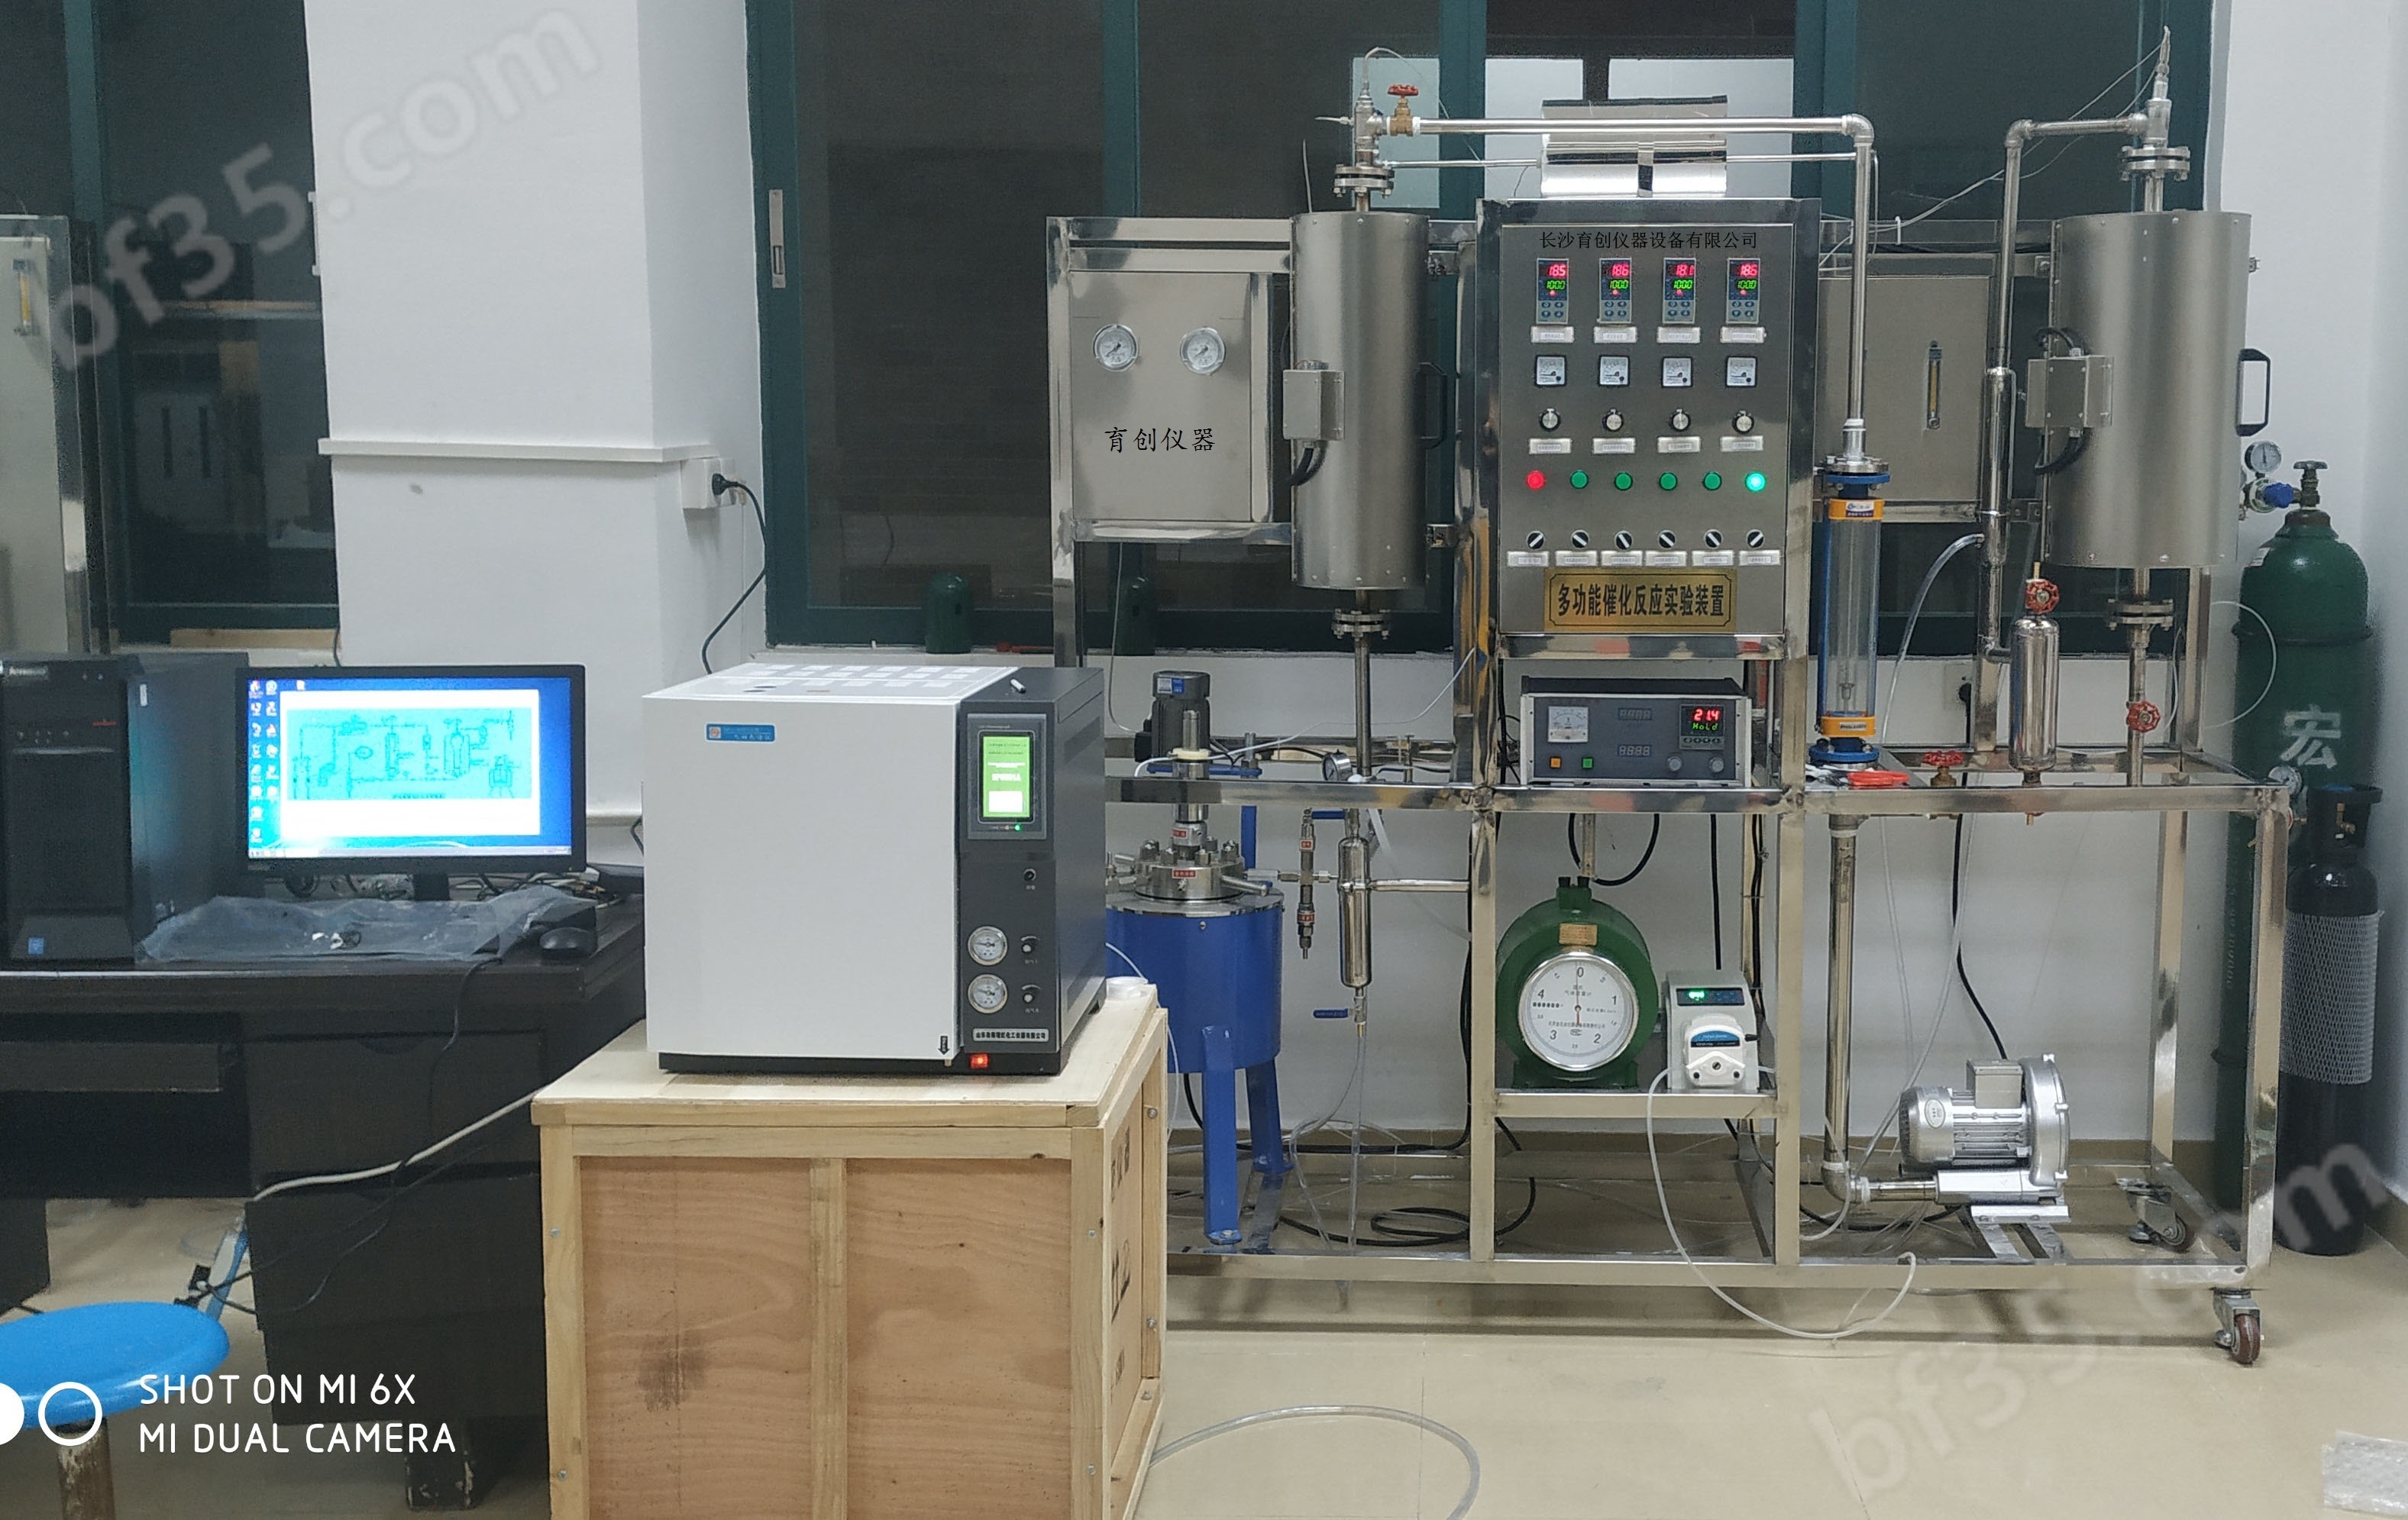 销售固定床催化反应器实验装置生产